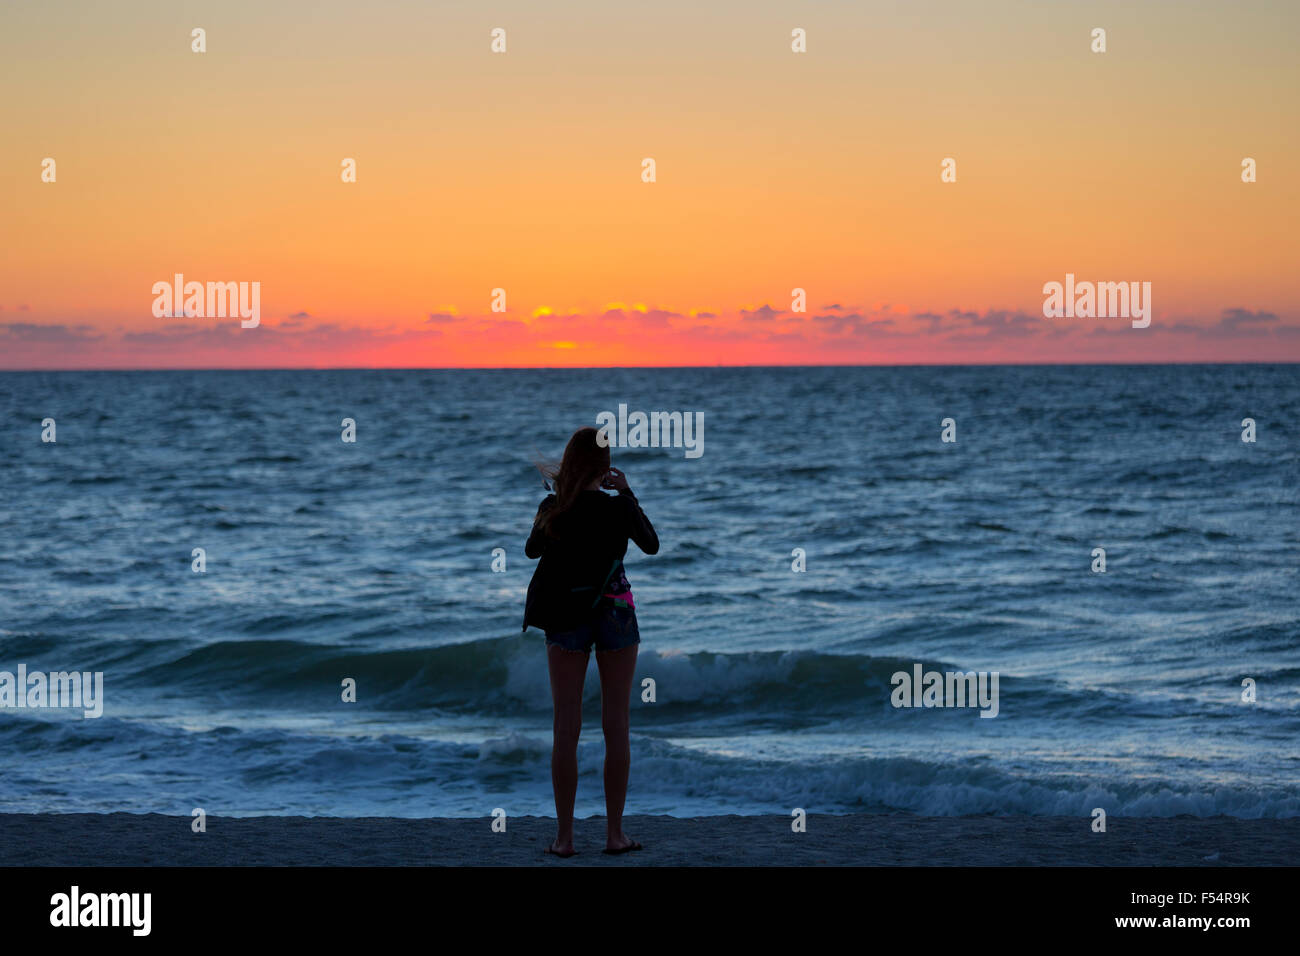 Photographier le coucher de soleil sur femme Captiva Island, en Floride, USA Banque D'Images